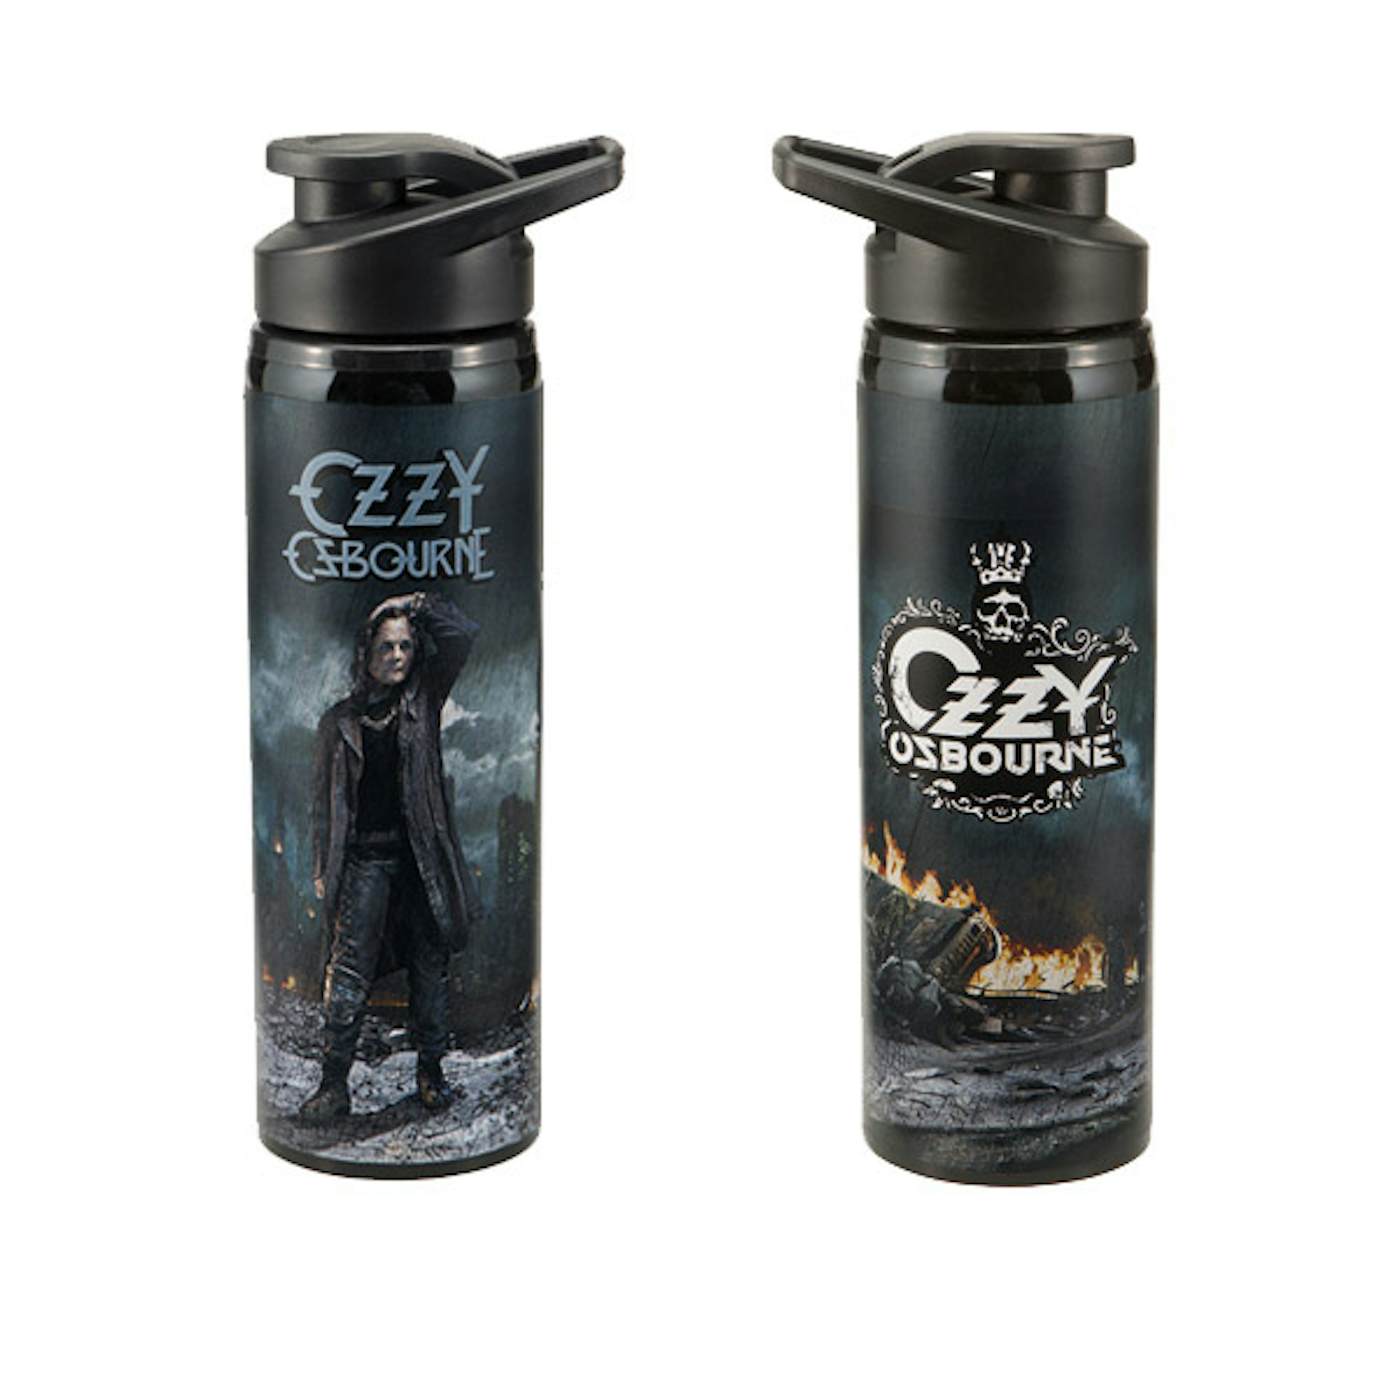 Ozzy Osbourne 27oz. Stainless Steel Water Bottle